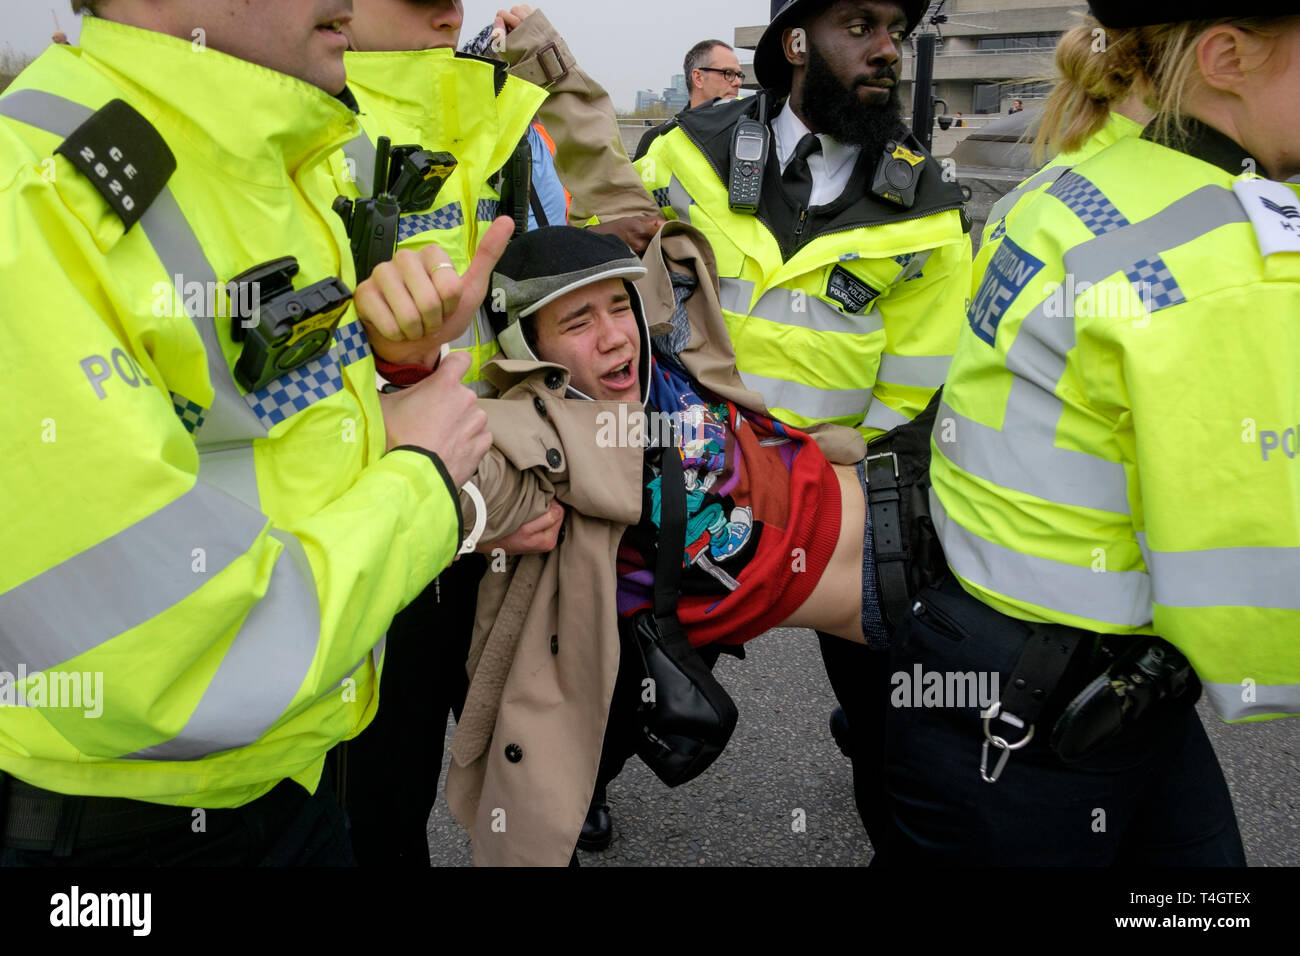 Extinction Rebellion Umweltaktivisten Occupy Waterloo Bridge, London: Beamte der Metropolitan Police nehmen einen männlichen Demonstrator fest. Stockfoto